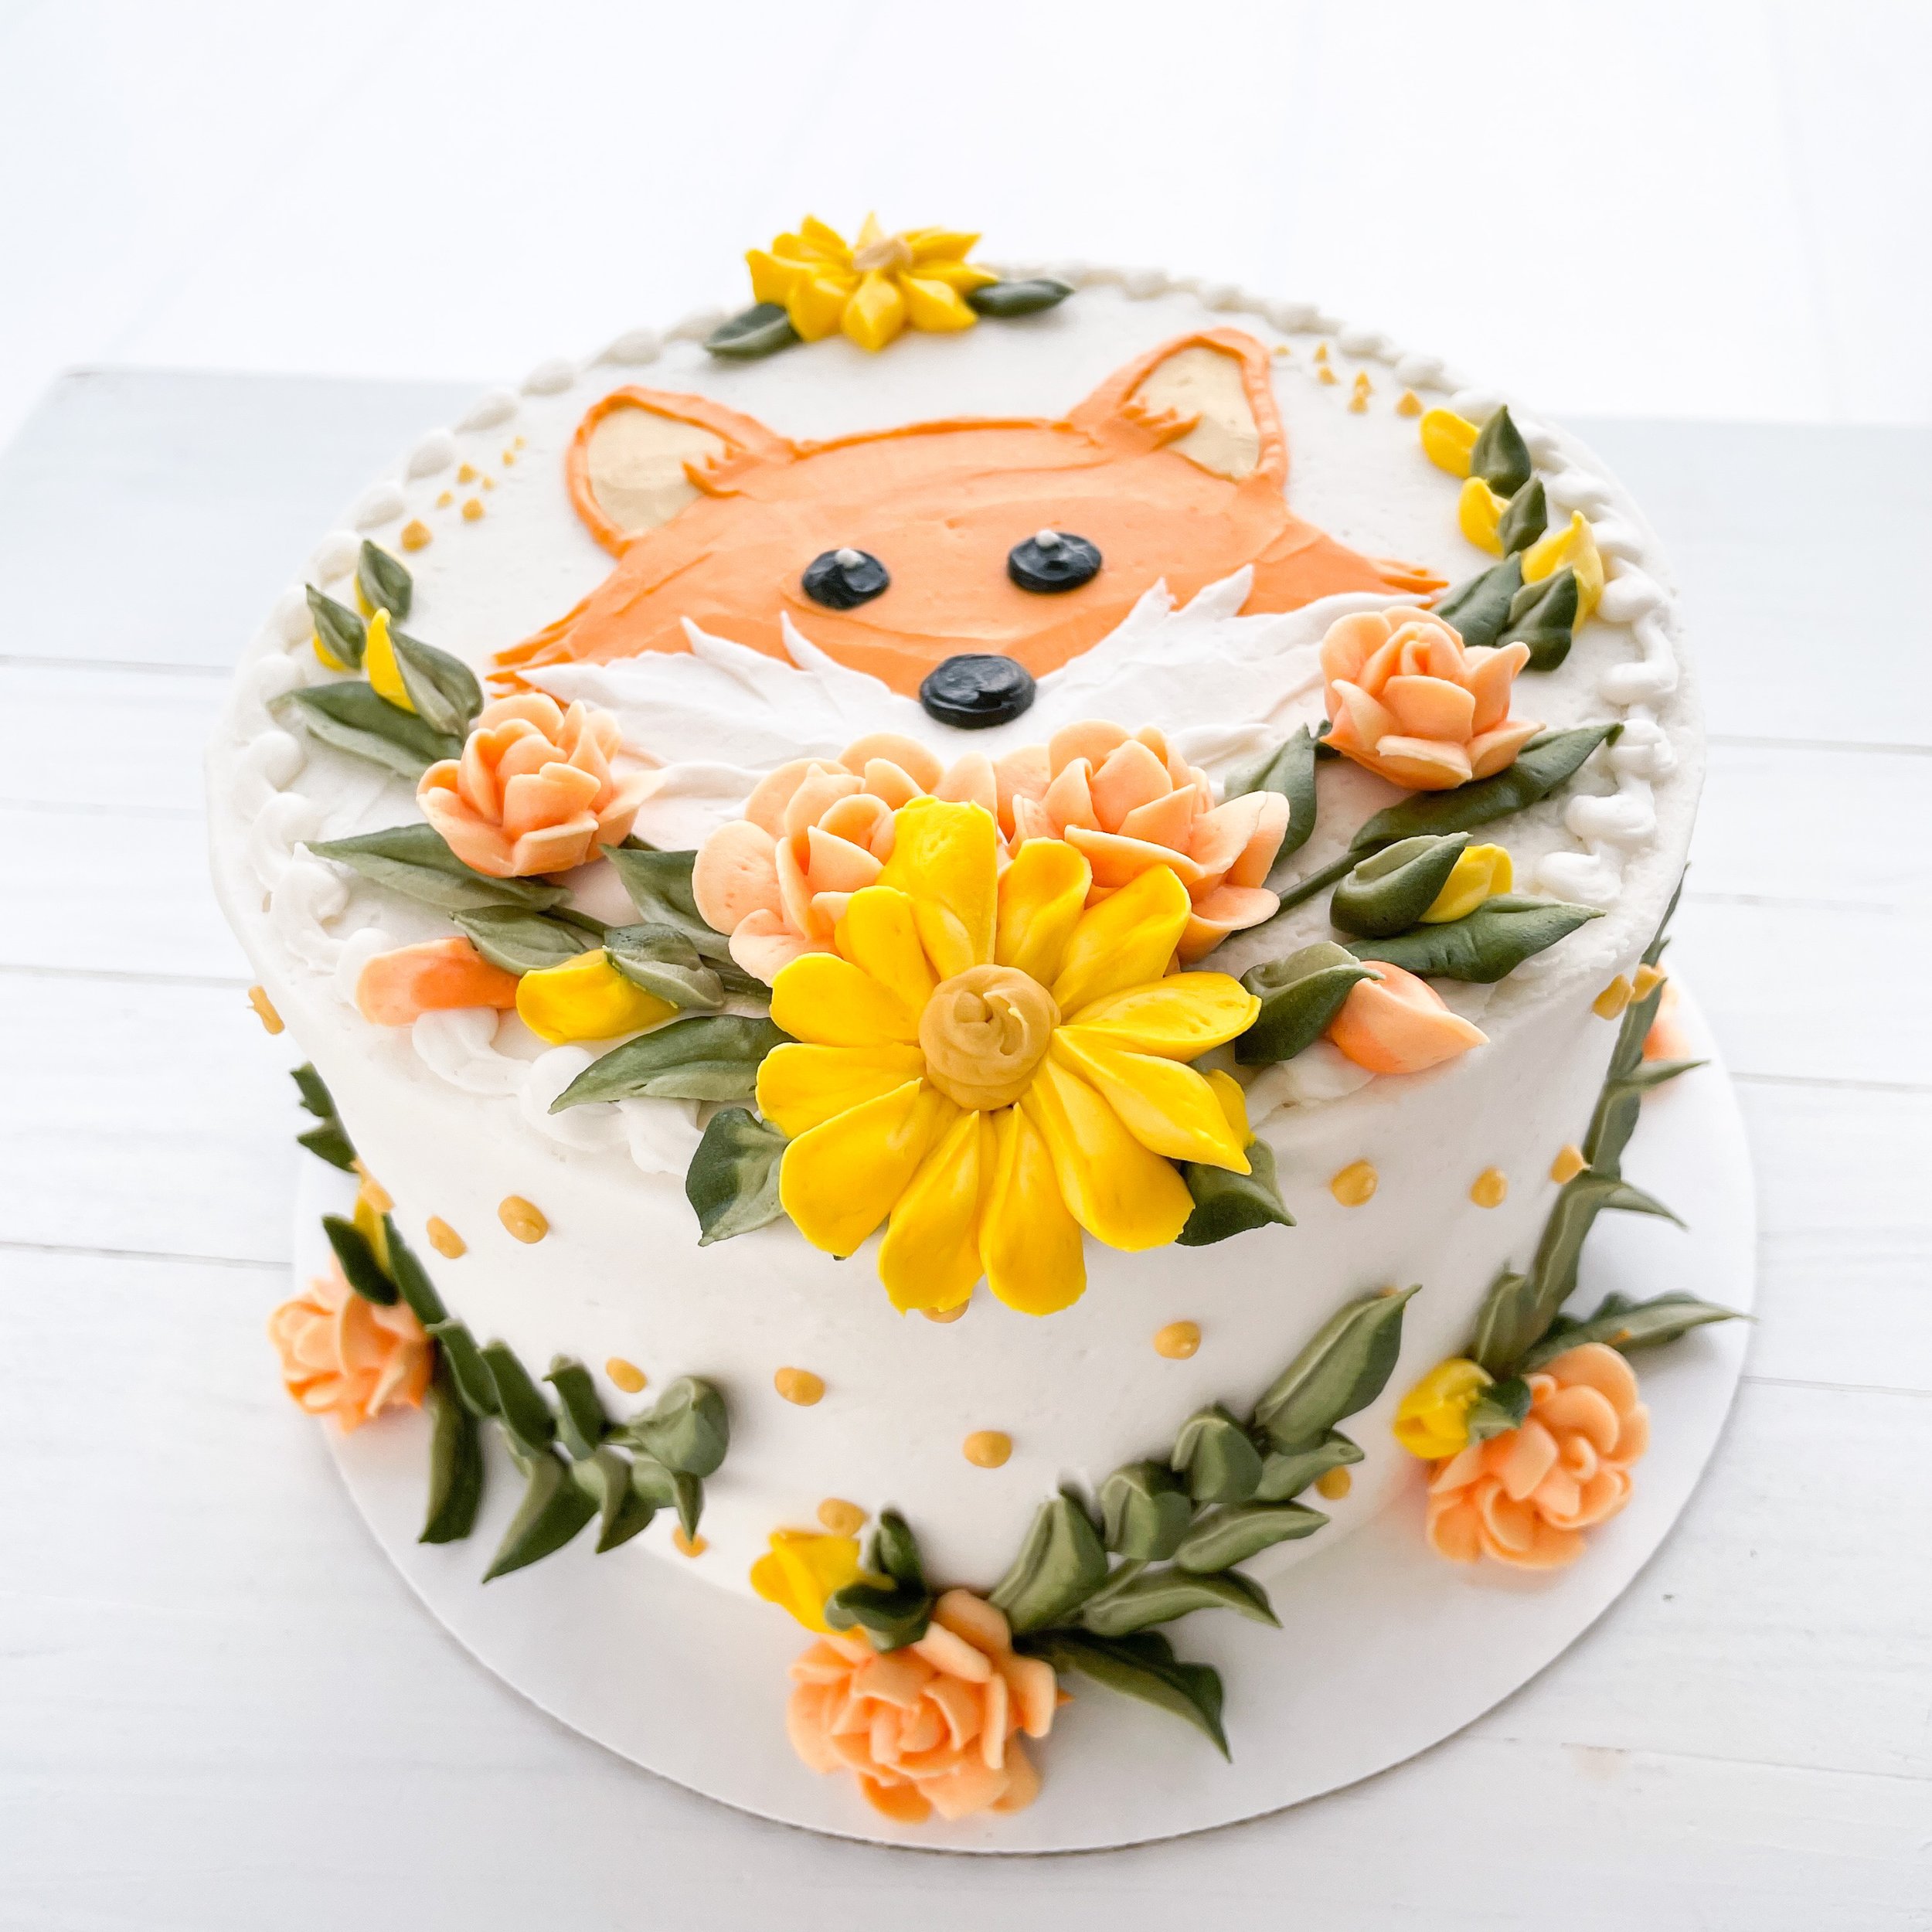 Fox Flower Cake 2.JPG